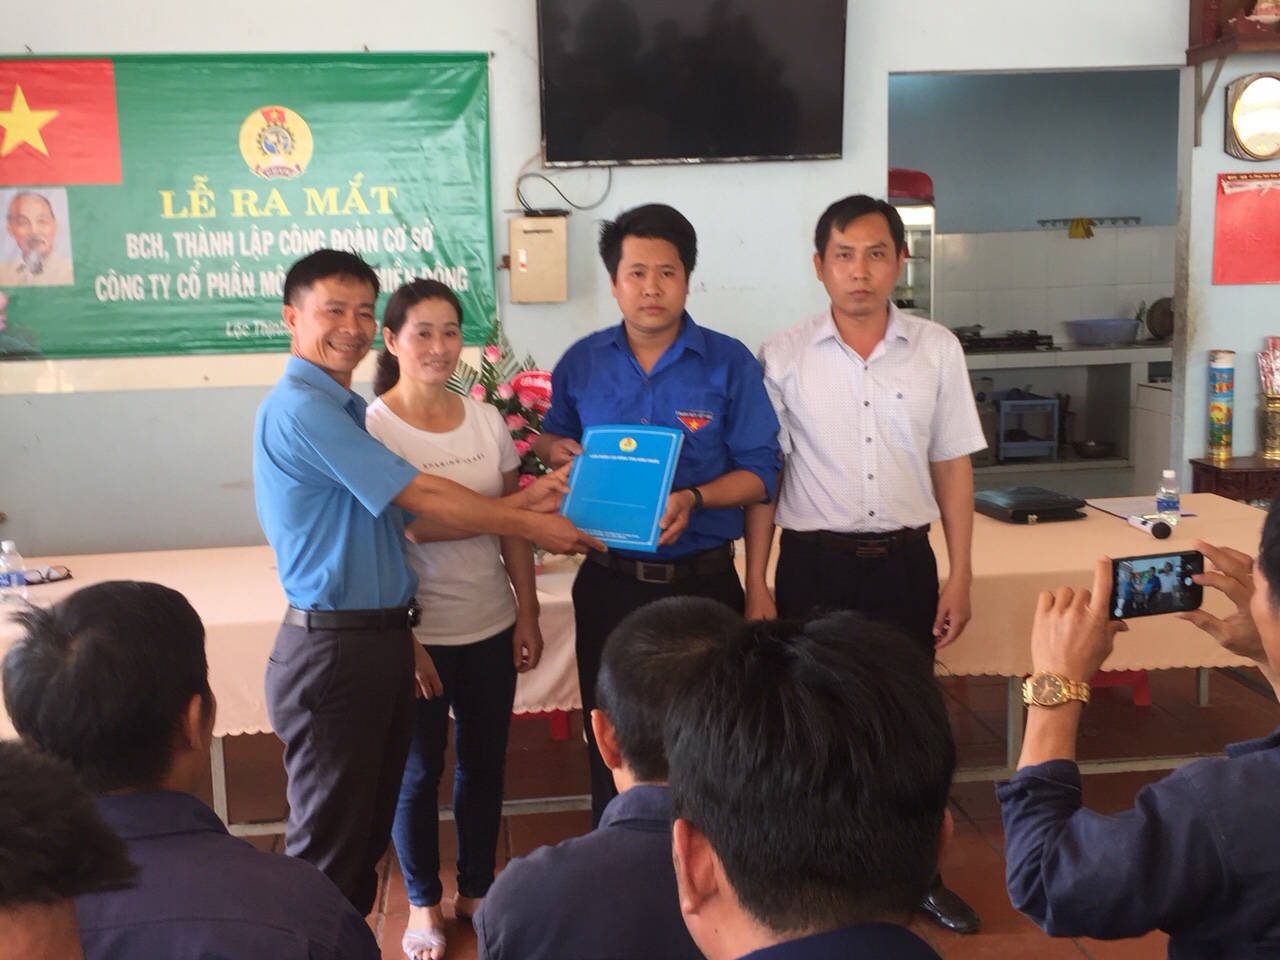 LĐLĐ huyện Lộc Ninh tổ chức Lễ ra mắt thành lập CĐCS Công ty cổ phần môi trường Miền Đông- Lộc Thịnh